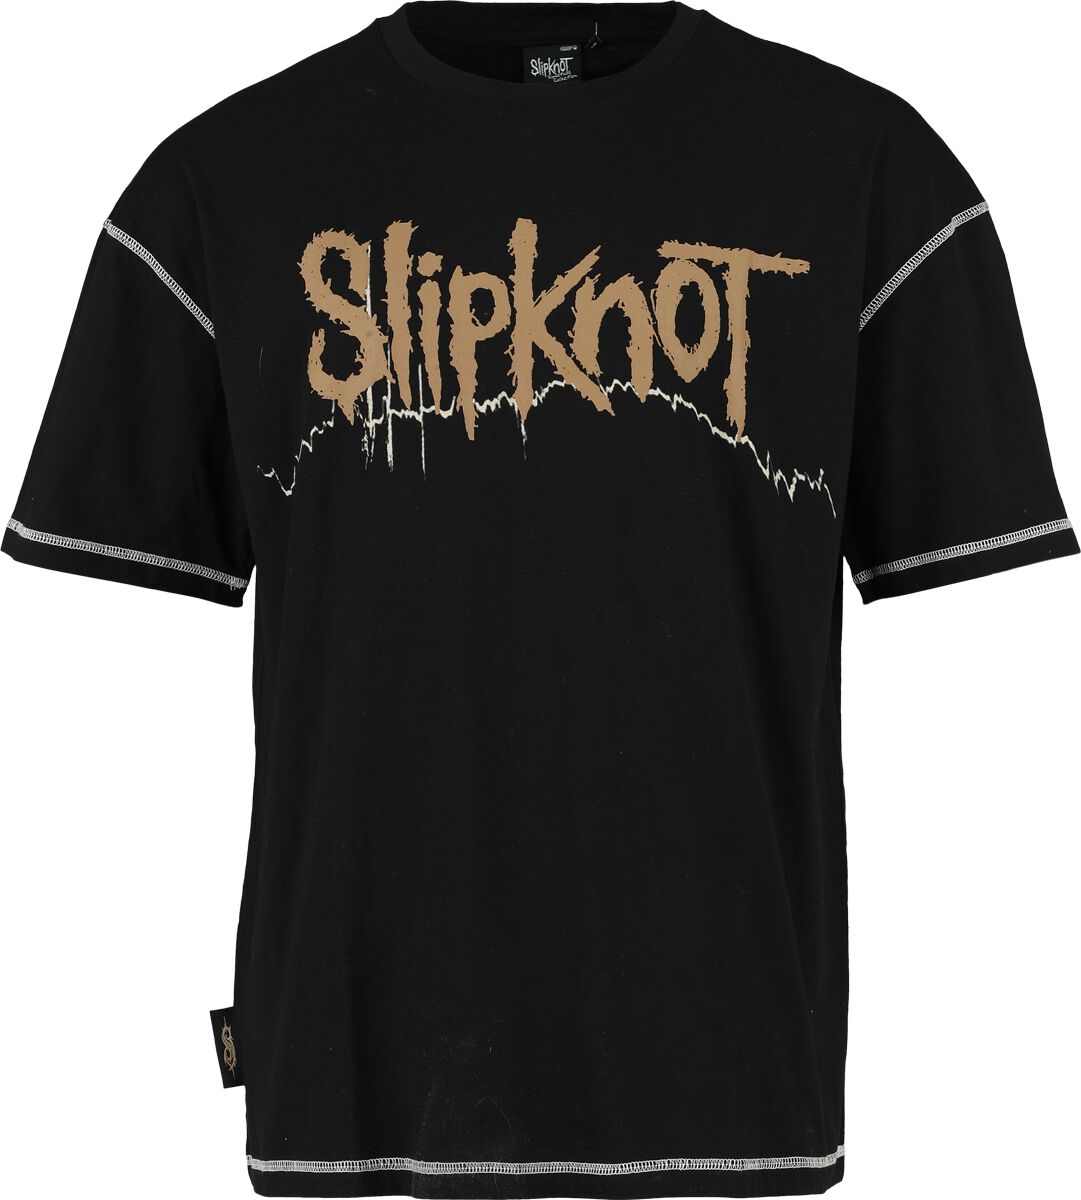 Slipknot T-Shirt - EMP Signature Collection - S bis 3XL - für Männer - Größe XL - schwarz  - EMP exklusives Merchandise!